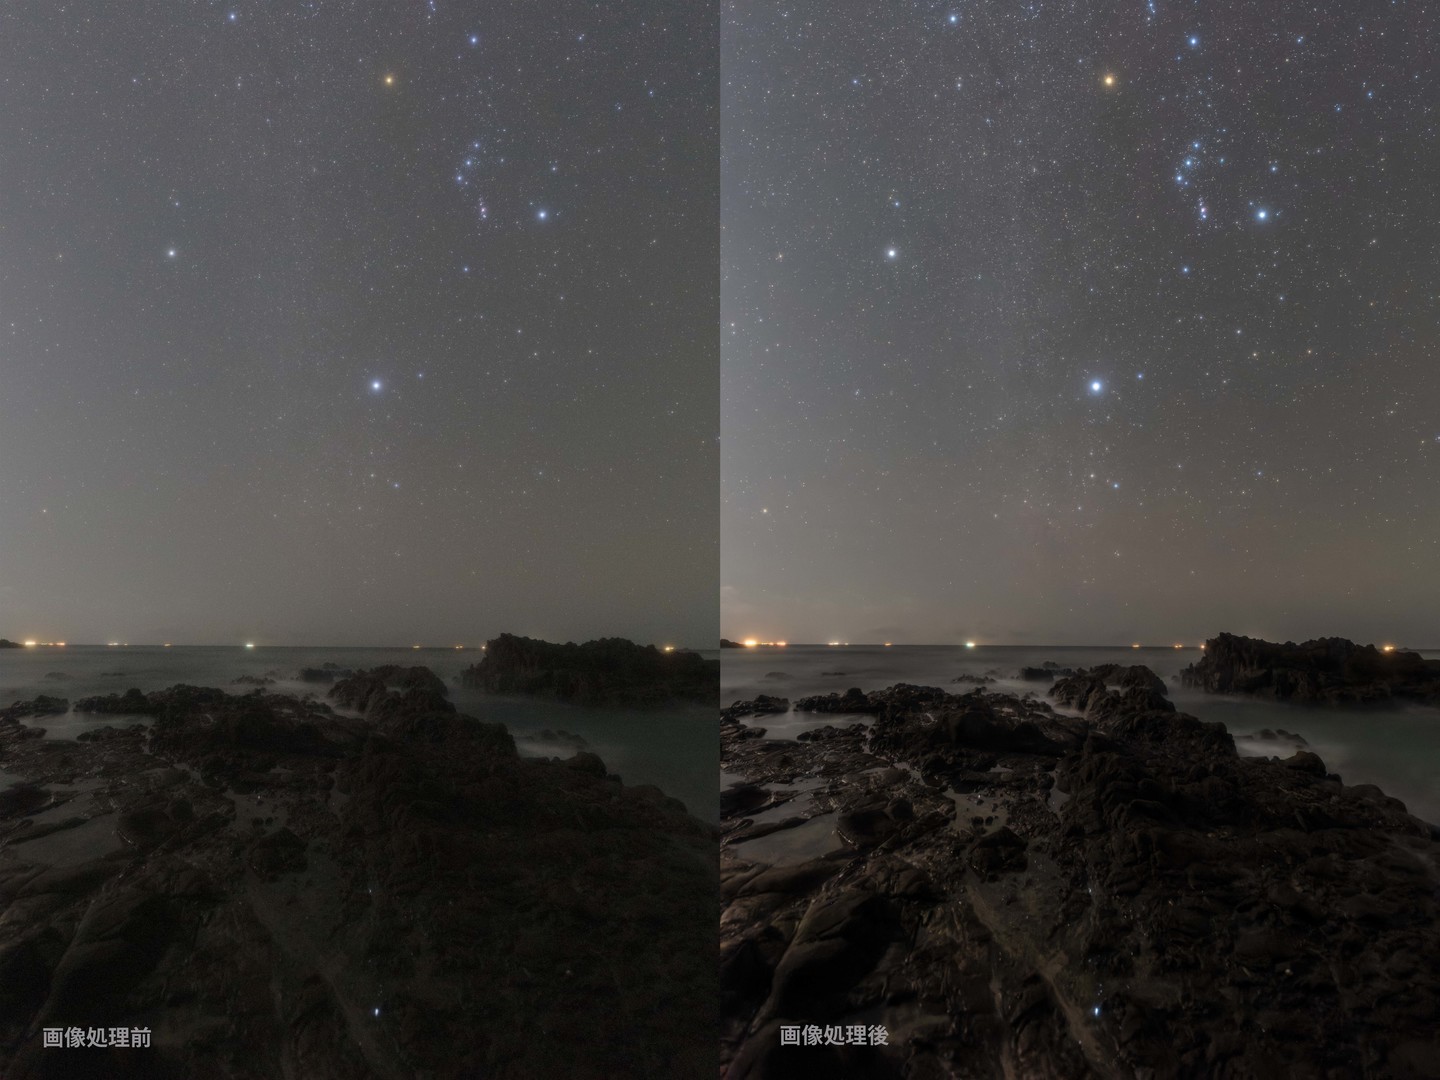 パナソニック Lumix S5の星空適性を検証 写真 動画の両立を実現した良質な一眼 Shasha